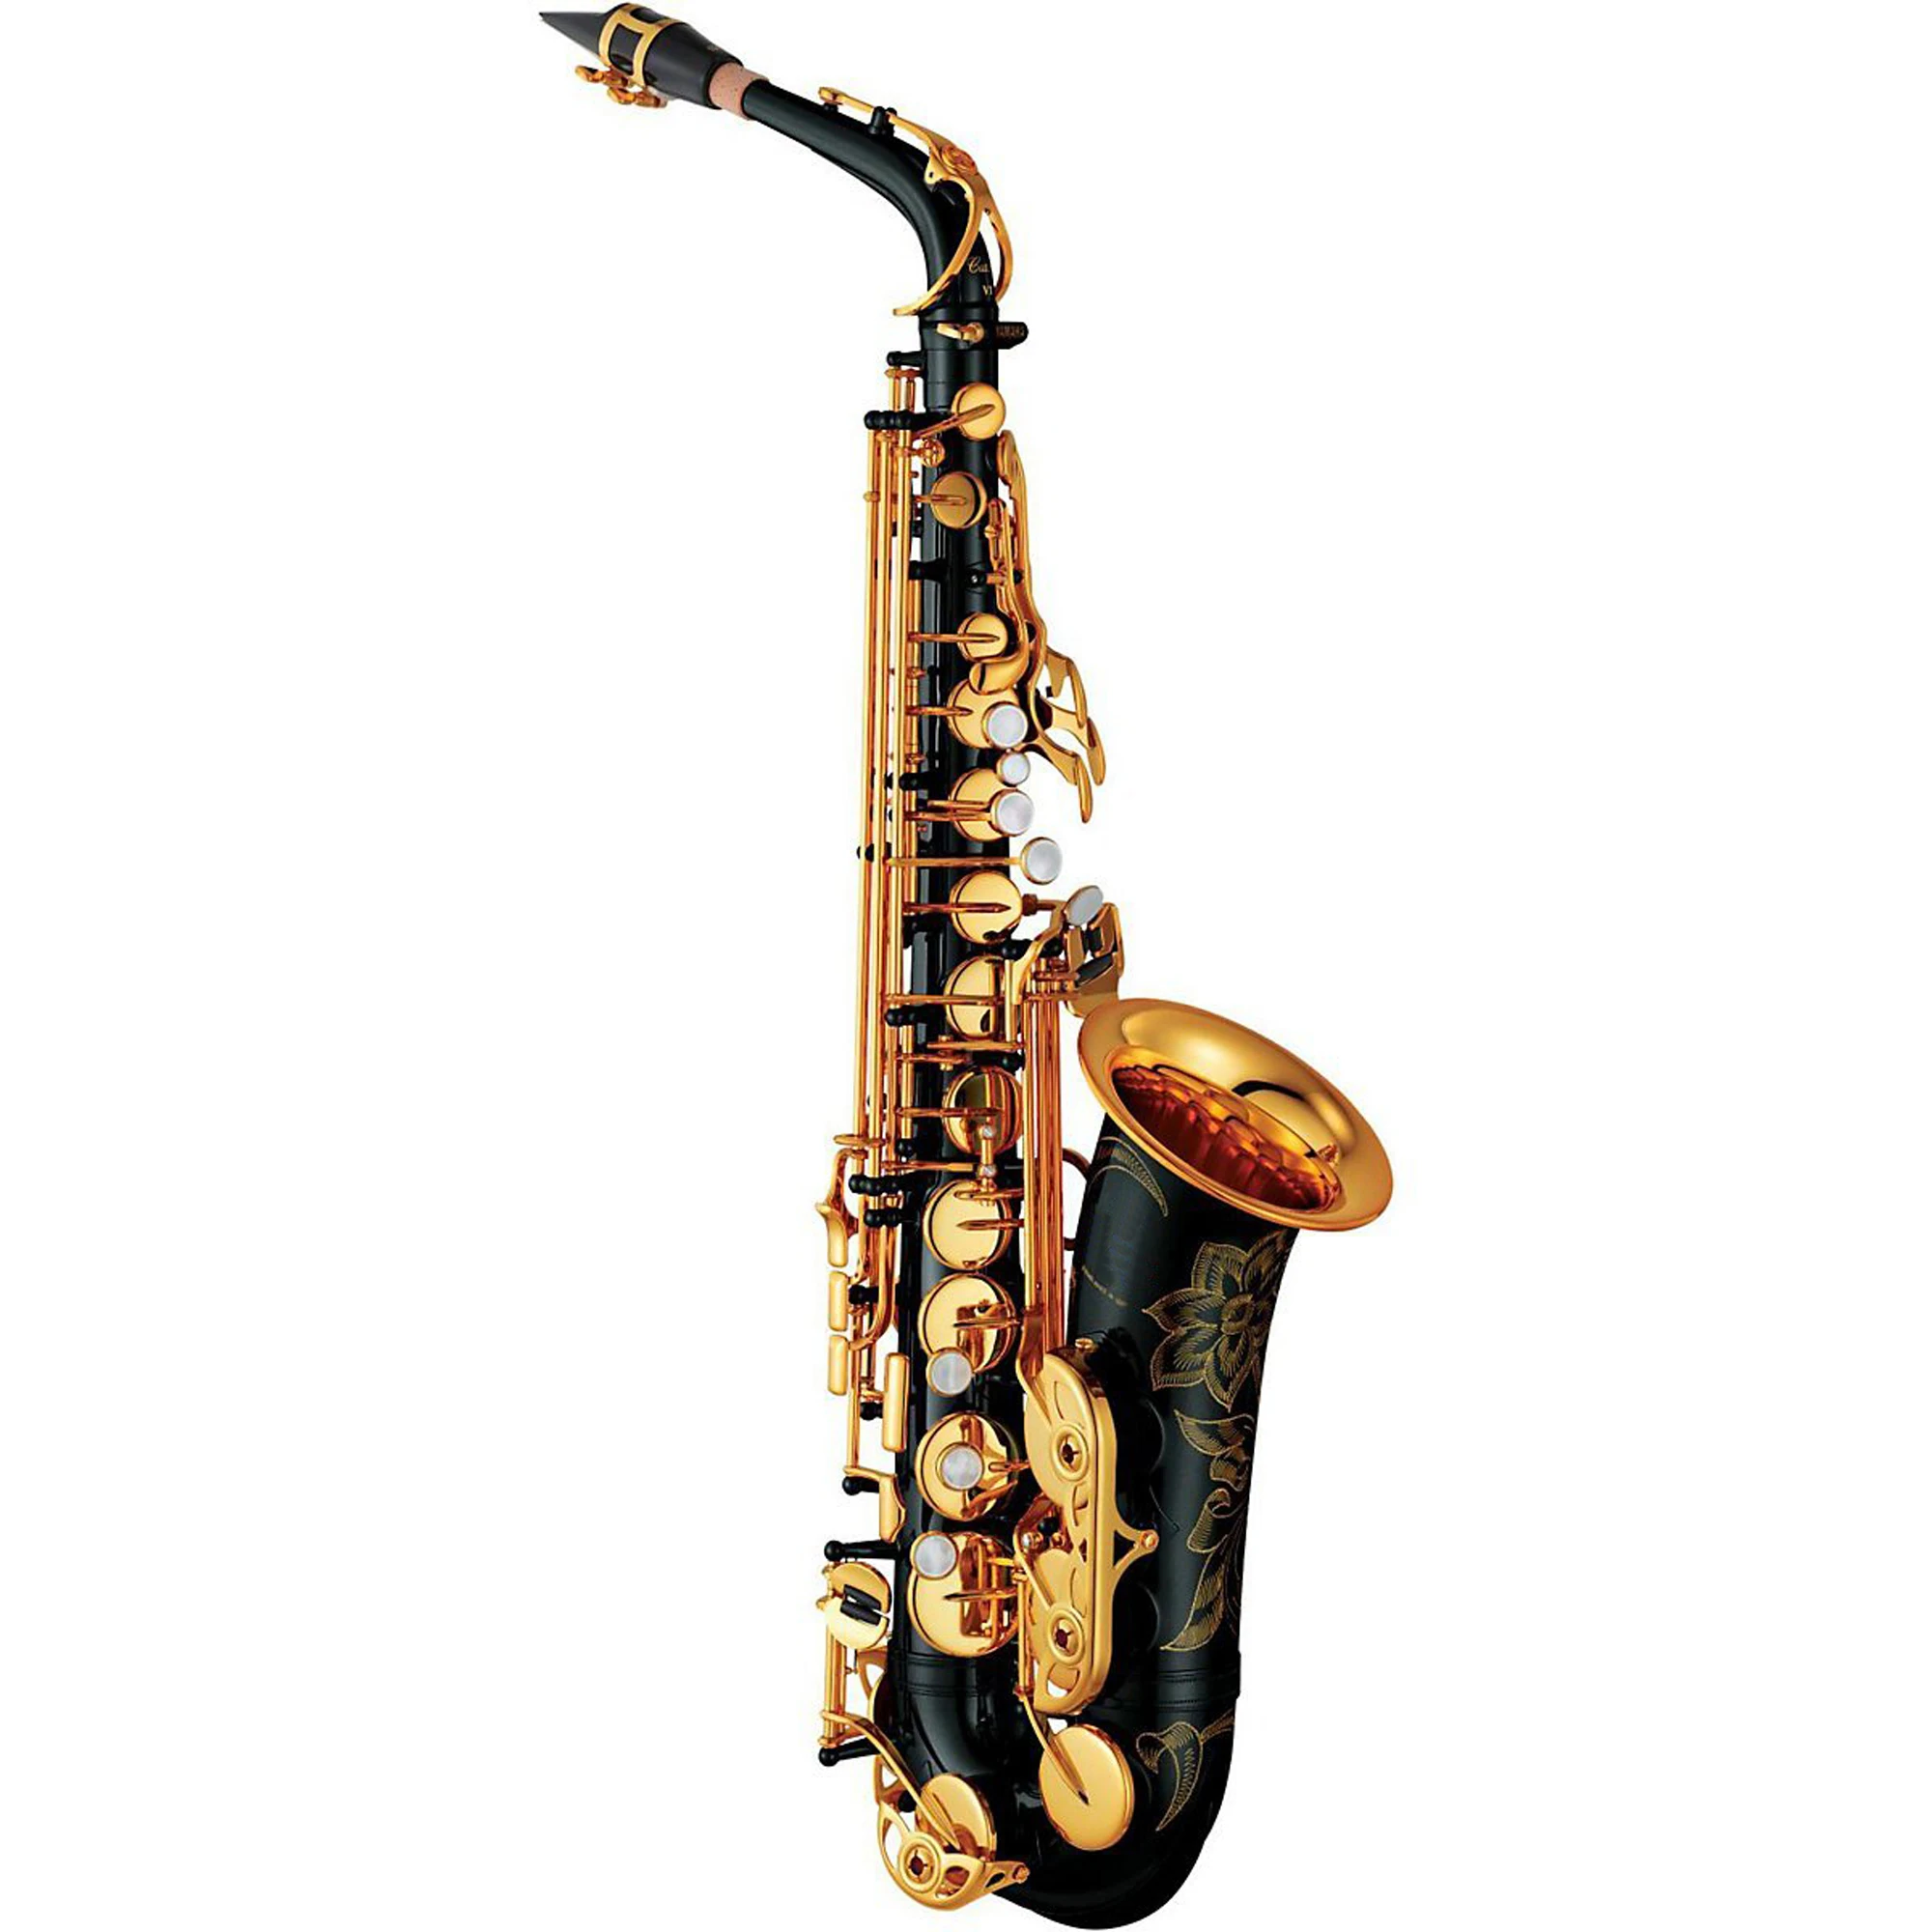 Альт-саксофон MFC 23 Профессиональный альт-саксофон под заказ 280 серия высокий саксофон черный лак с мундштуком тростники чехол на шею